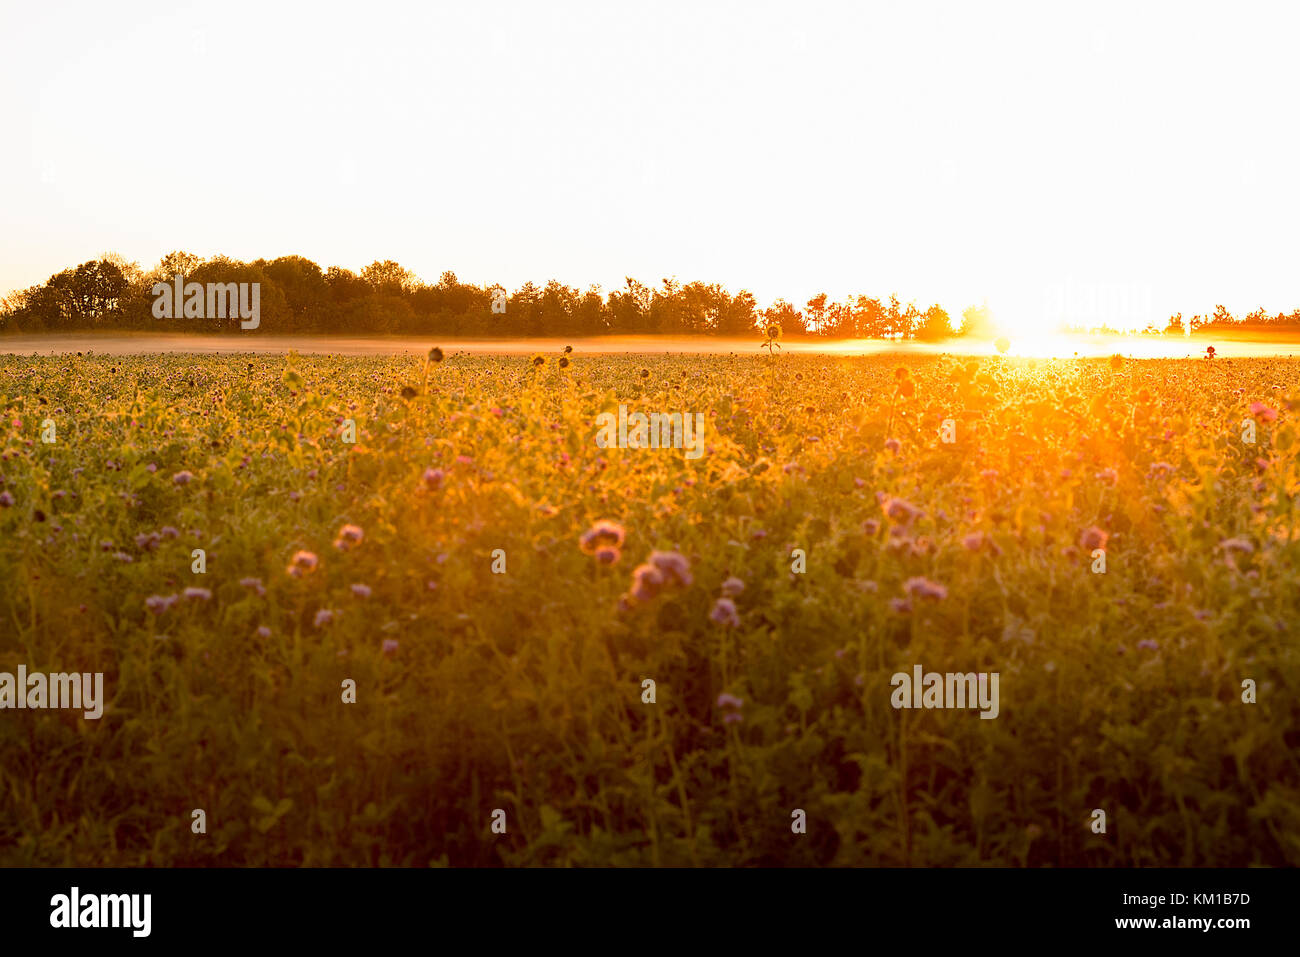 Am frühen Morgen Sonne ein getreidefeld mit einigen großen Sonnenblumen genießen Sie die Sonne strahlen. Stockfoto